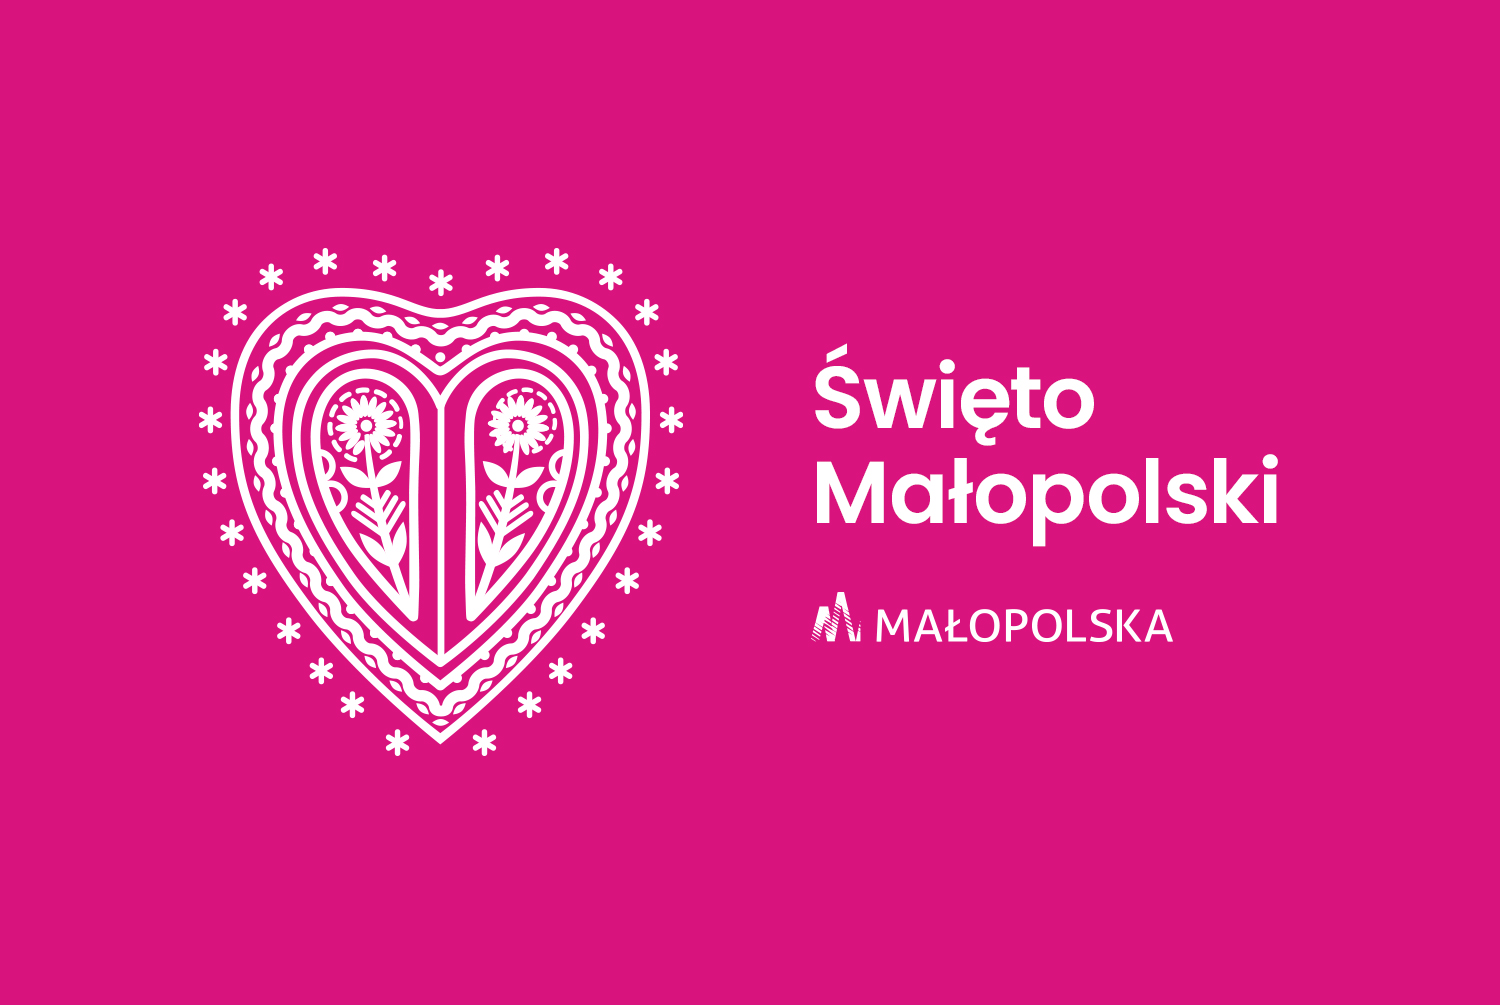 Parzenica na różowym tle. napis Święto Małopolski 2021 oraz logo Małopolska